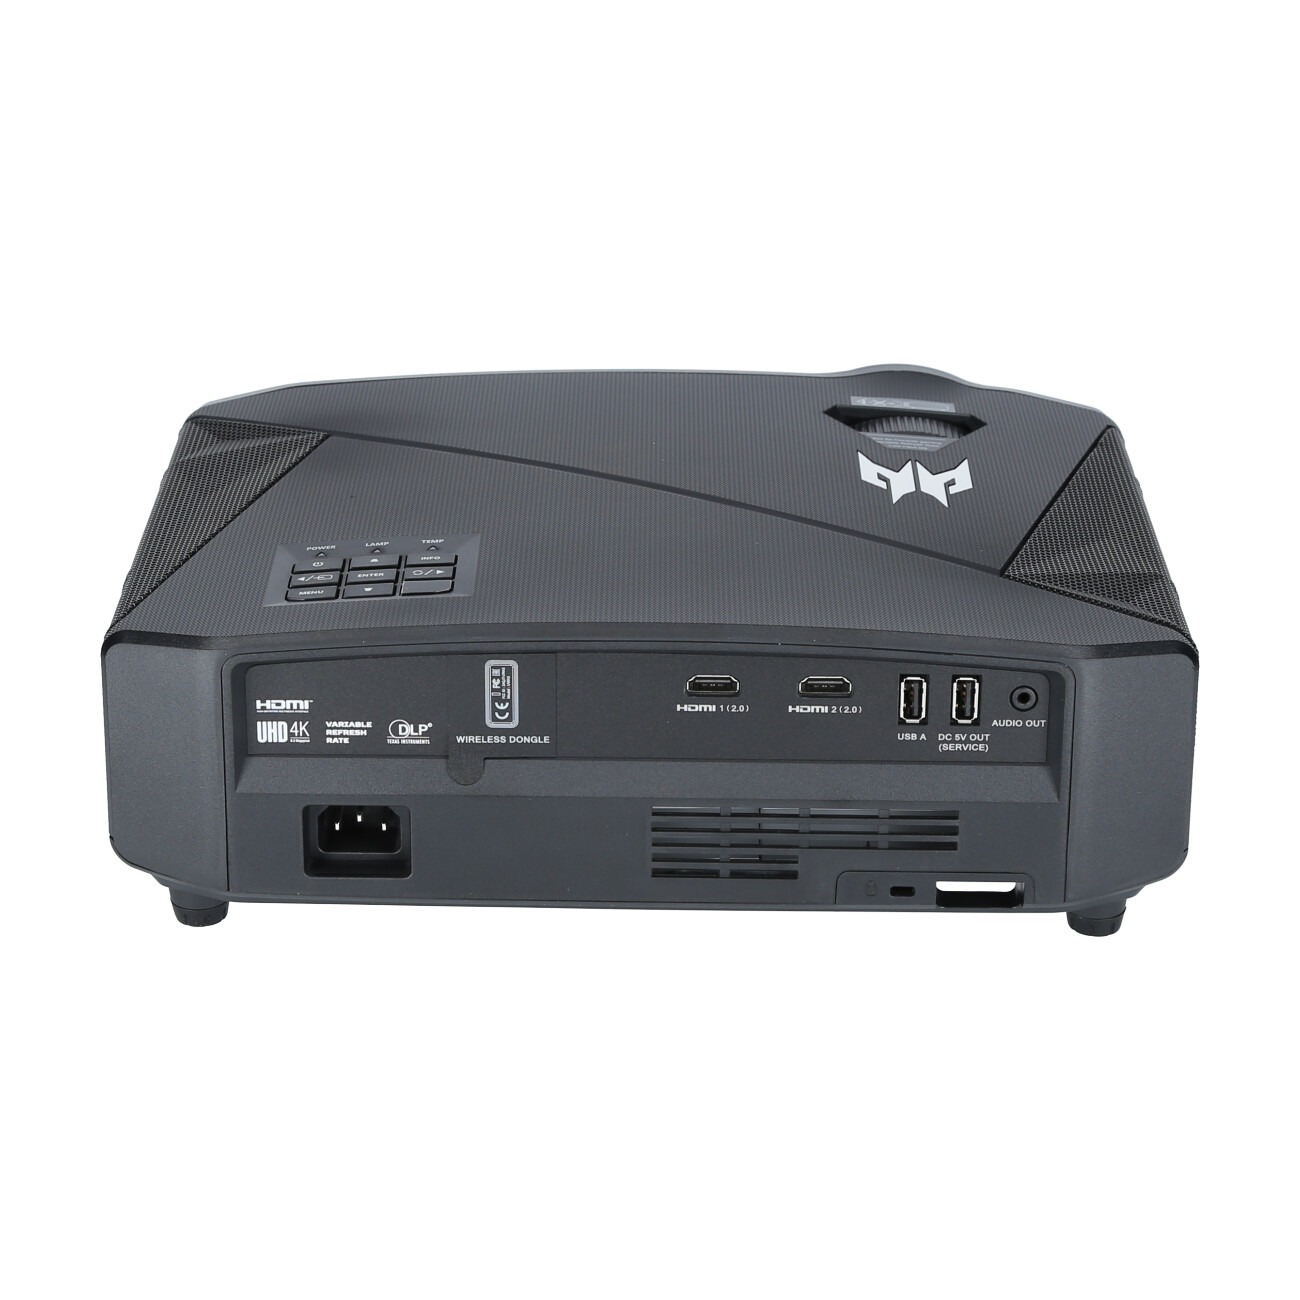 Acer-Predator-GD711-Demo